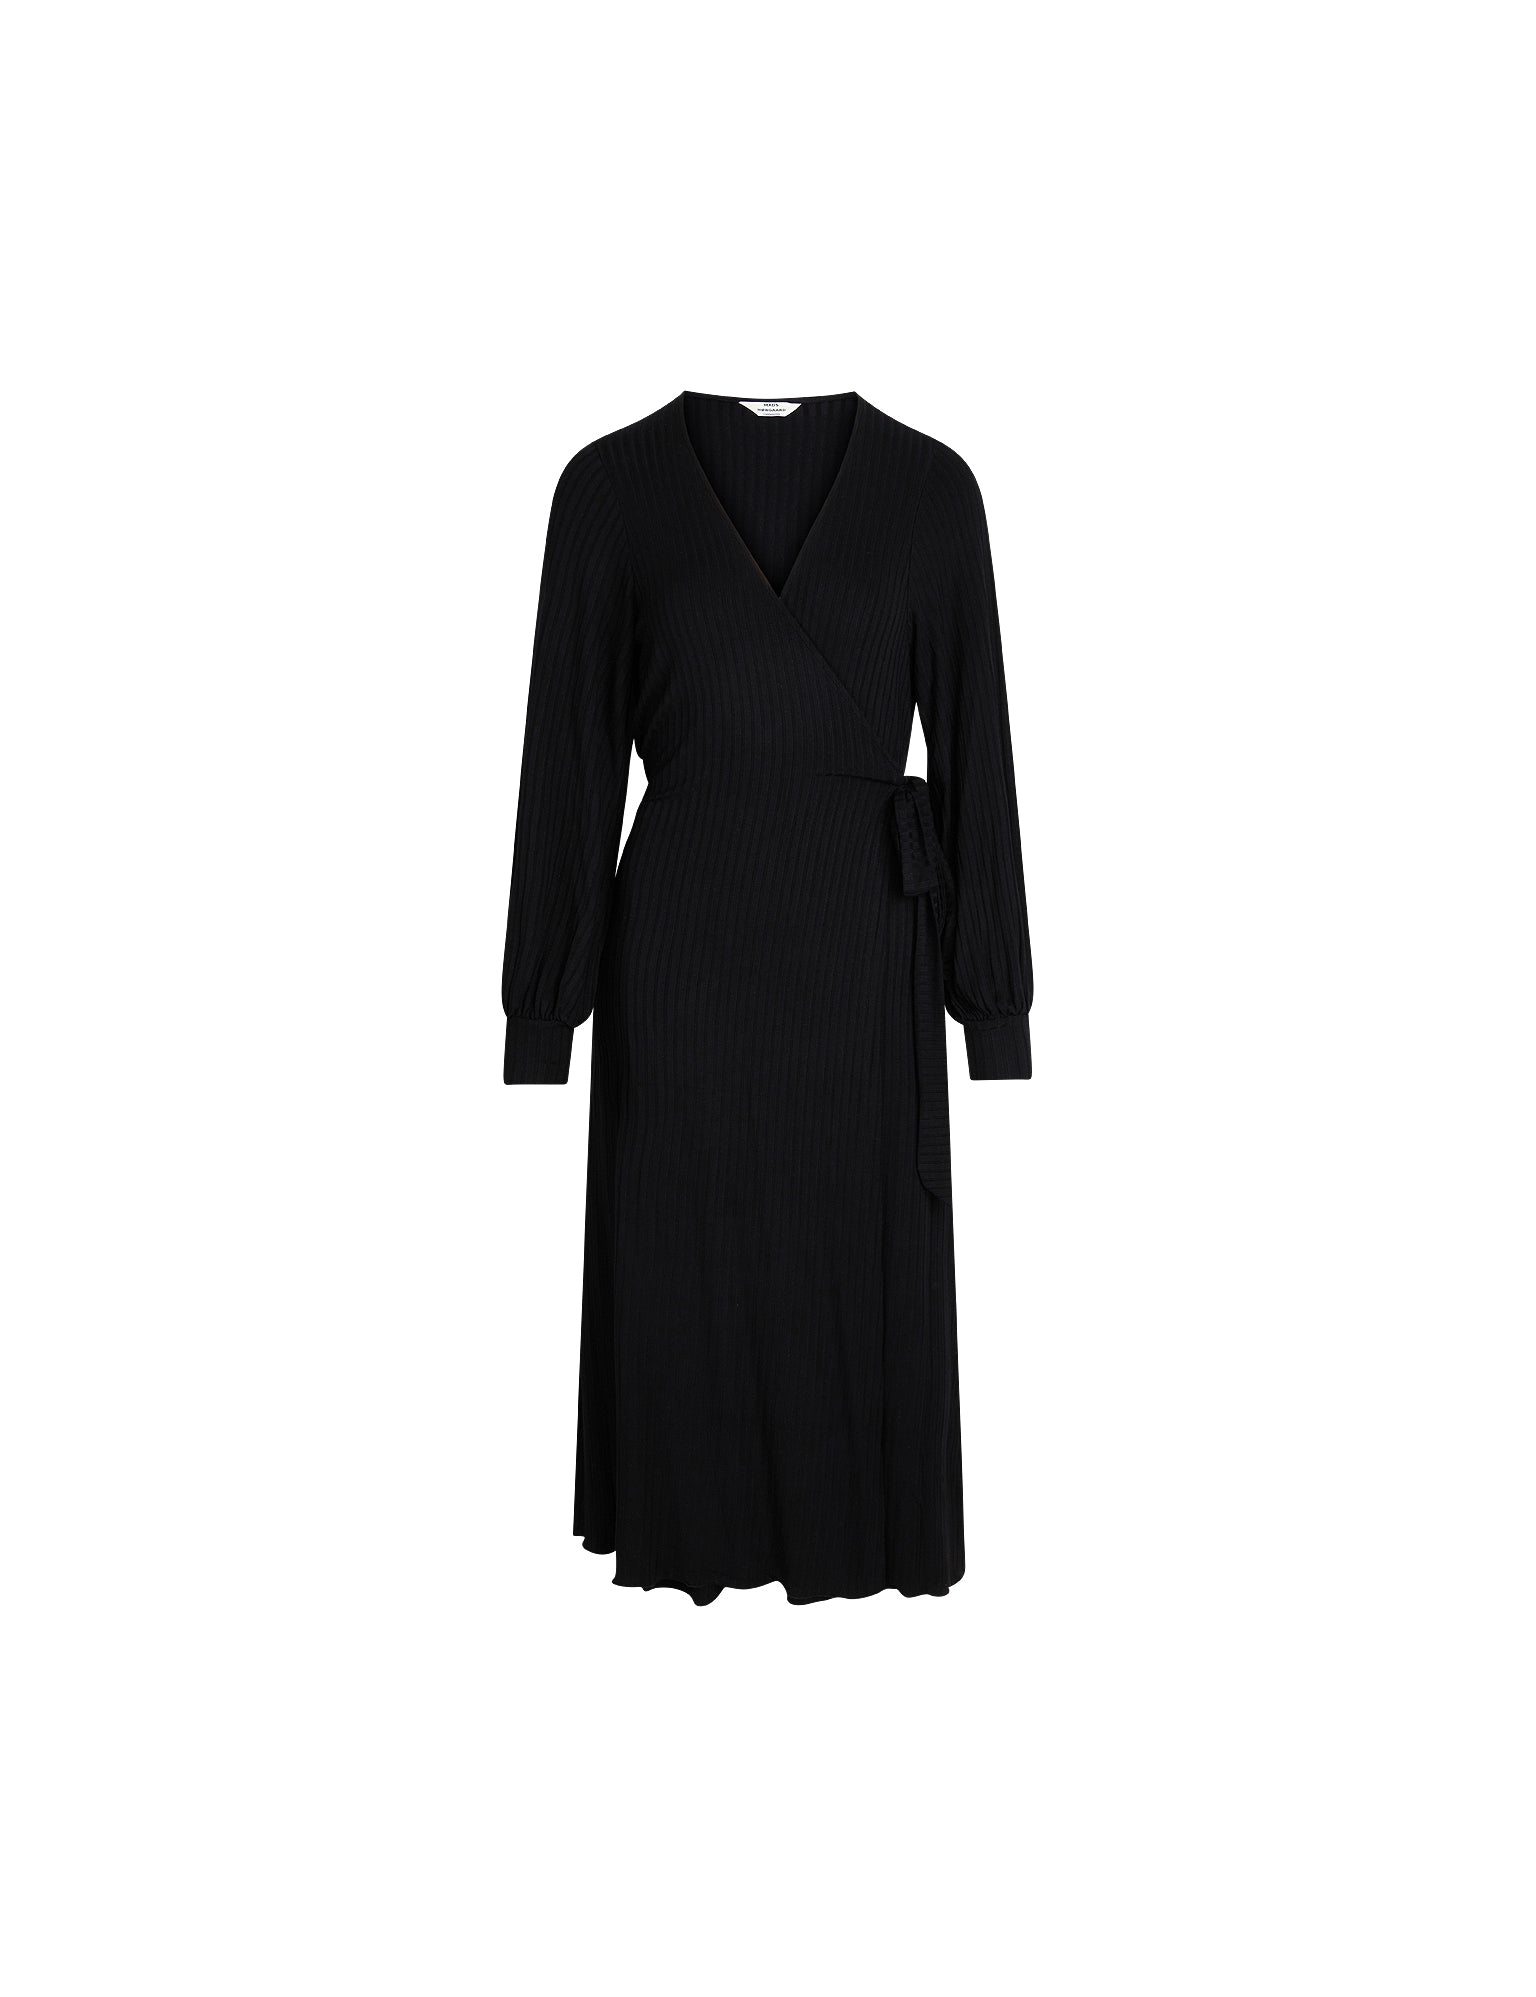 5x5 Dress, Black – MADS NØRGAARD - COPENHAGEN